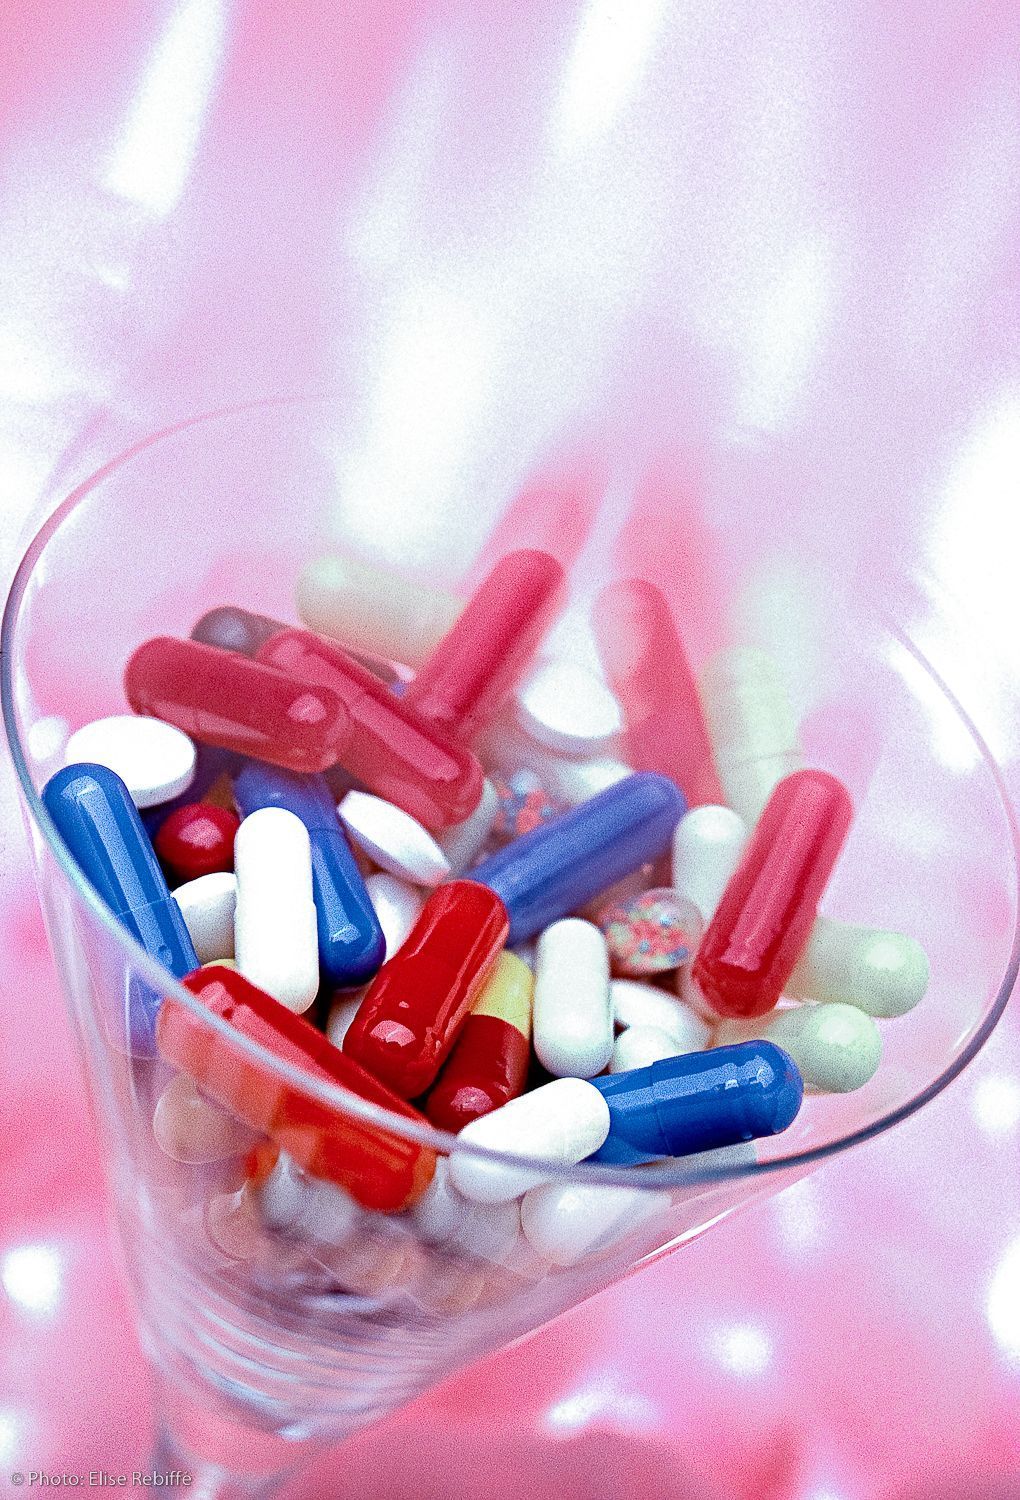 02-RE-medicaments-generiques